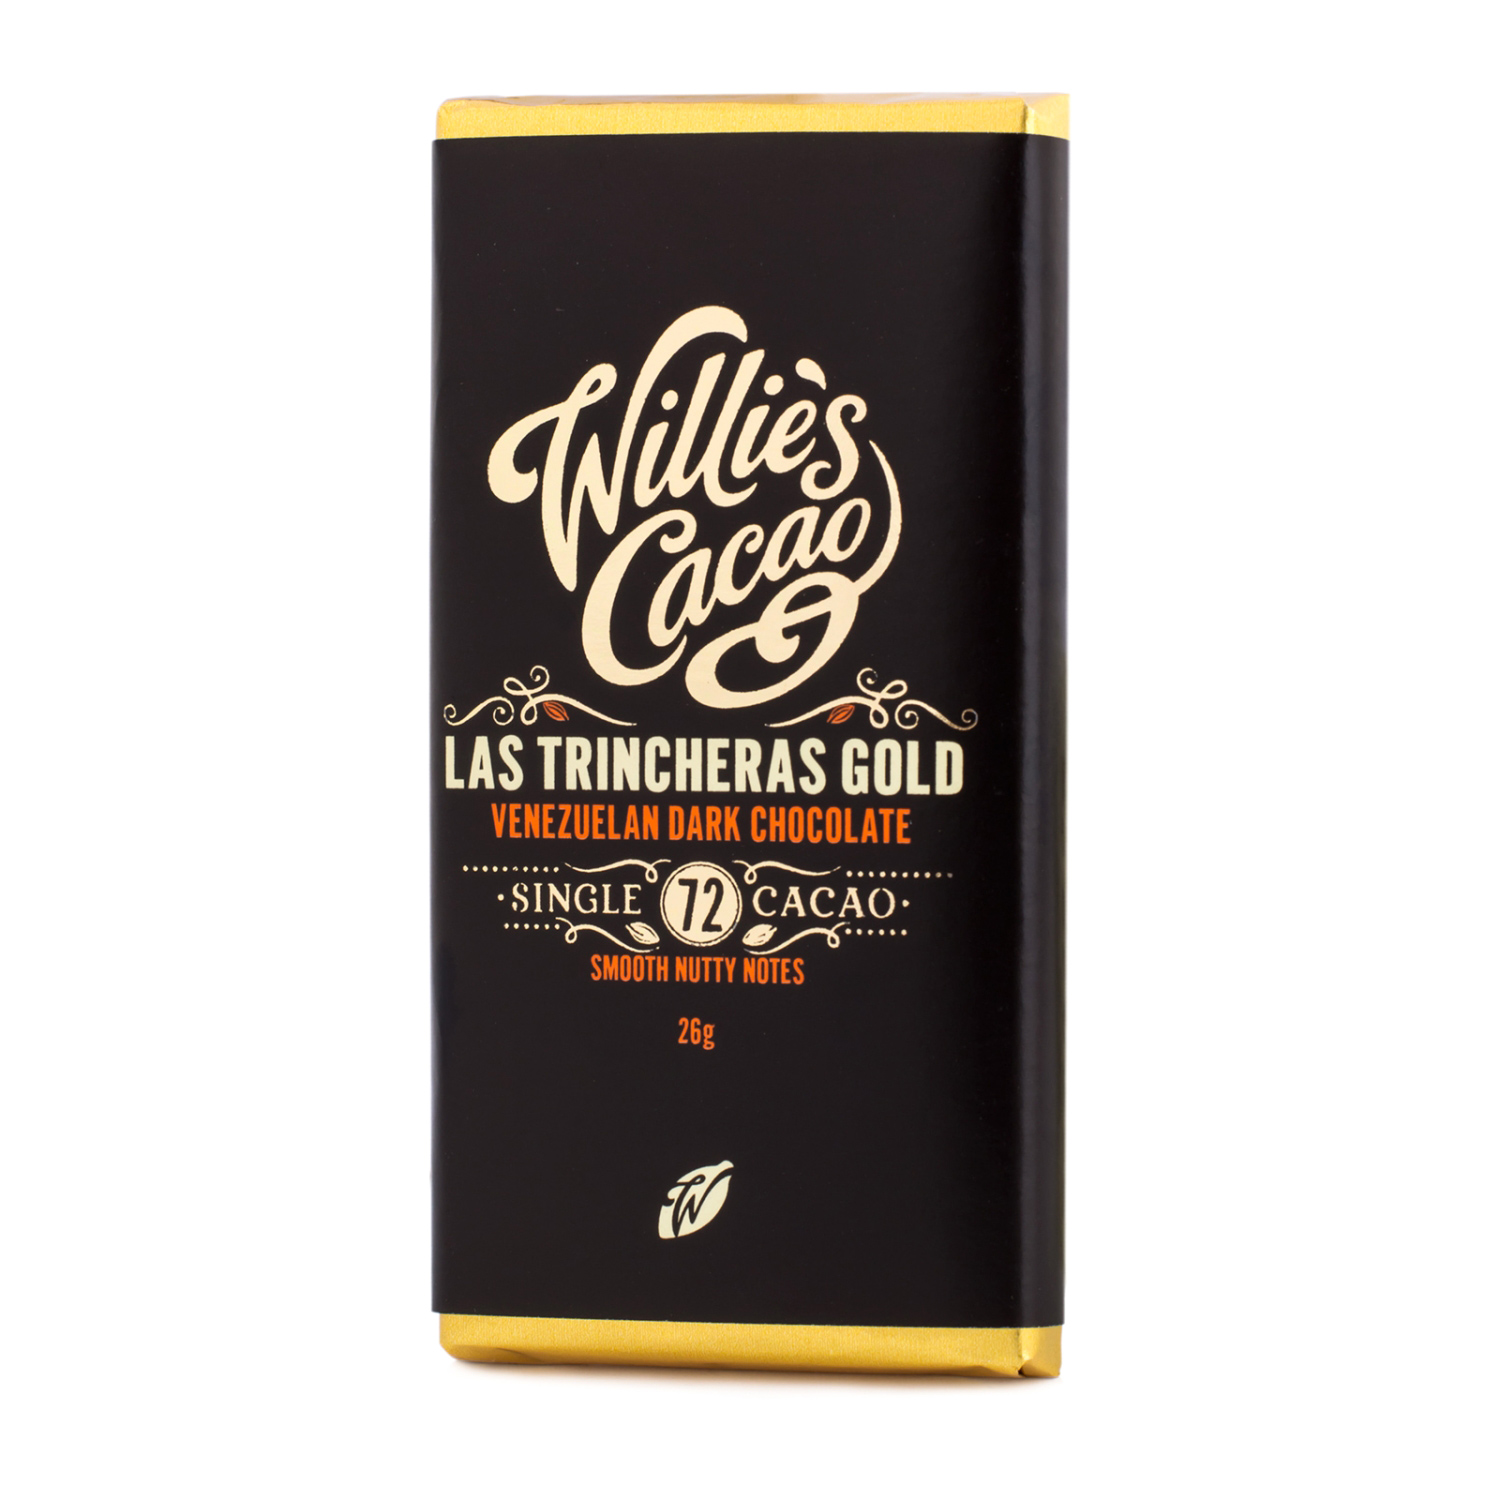 Willie's Cacao - 72% Las Trincheras Gold 26g